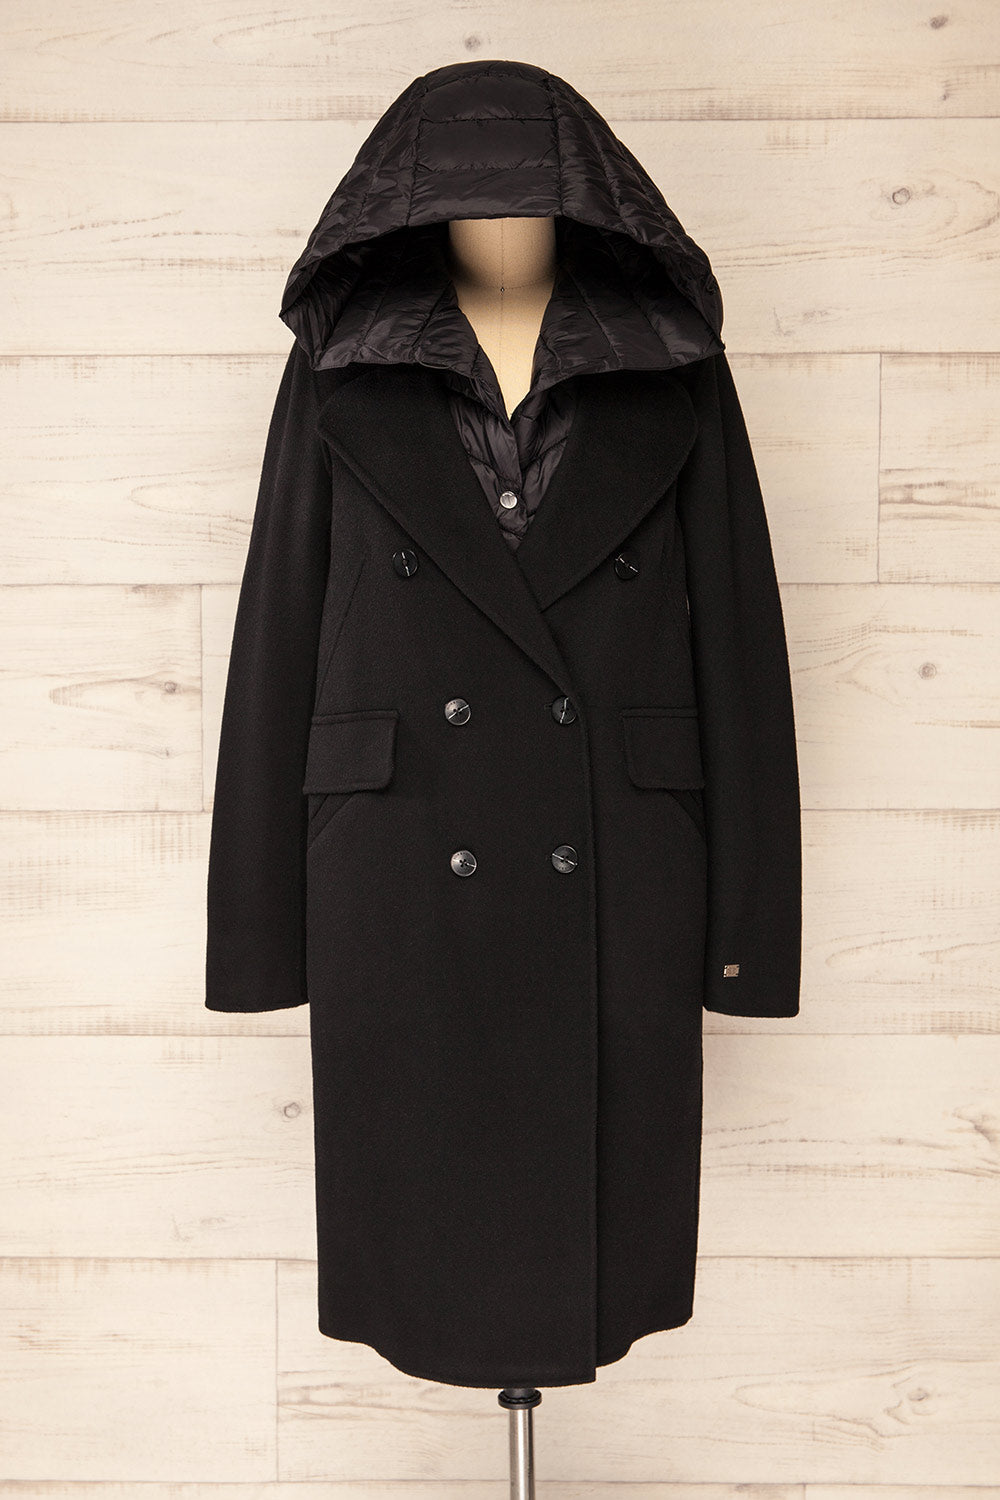 Violan 3-in-1 Wool Coat with Hood | La Petite Garçonne hood view